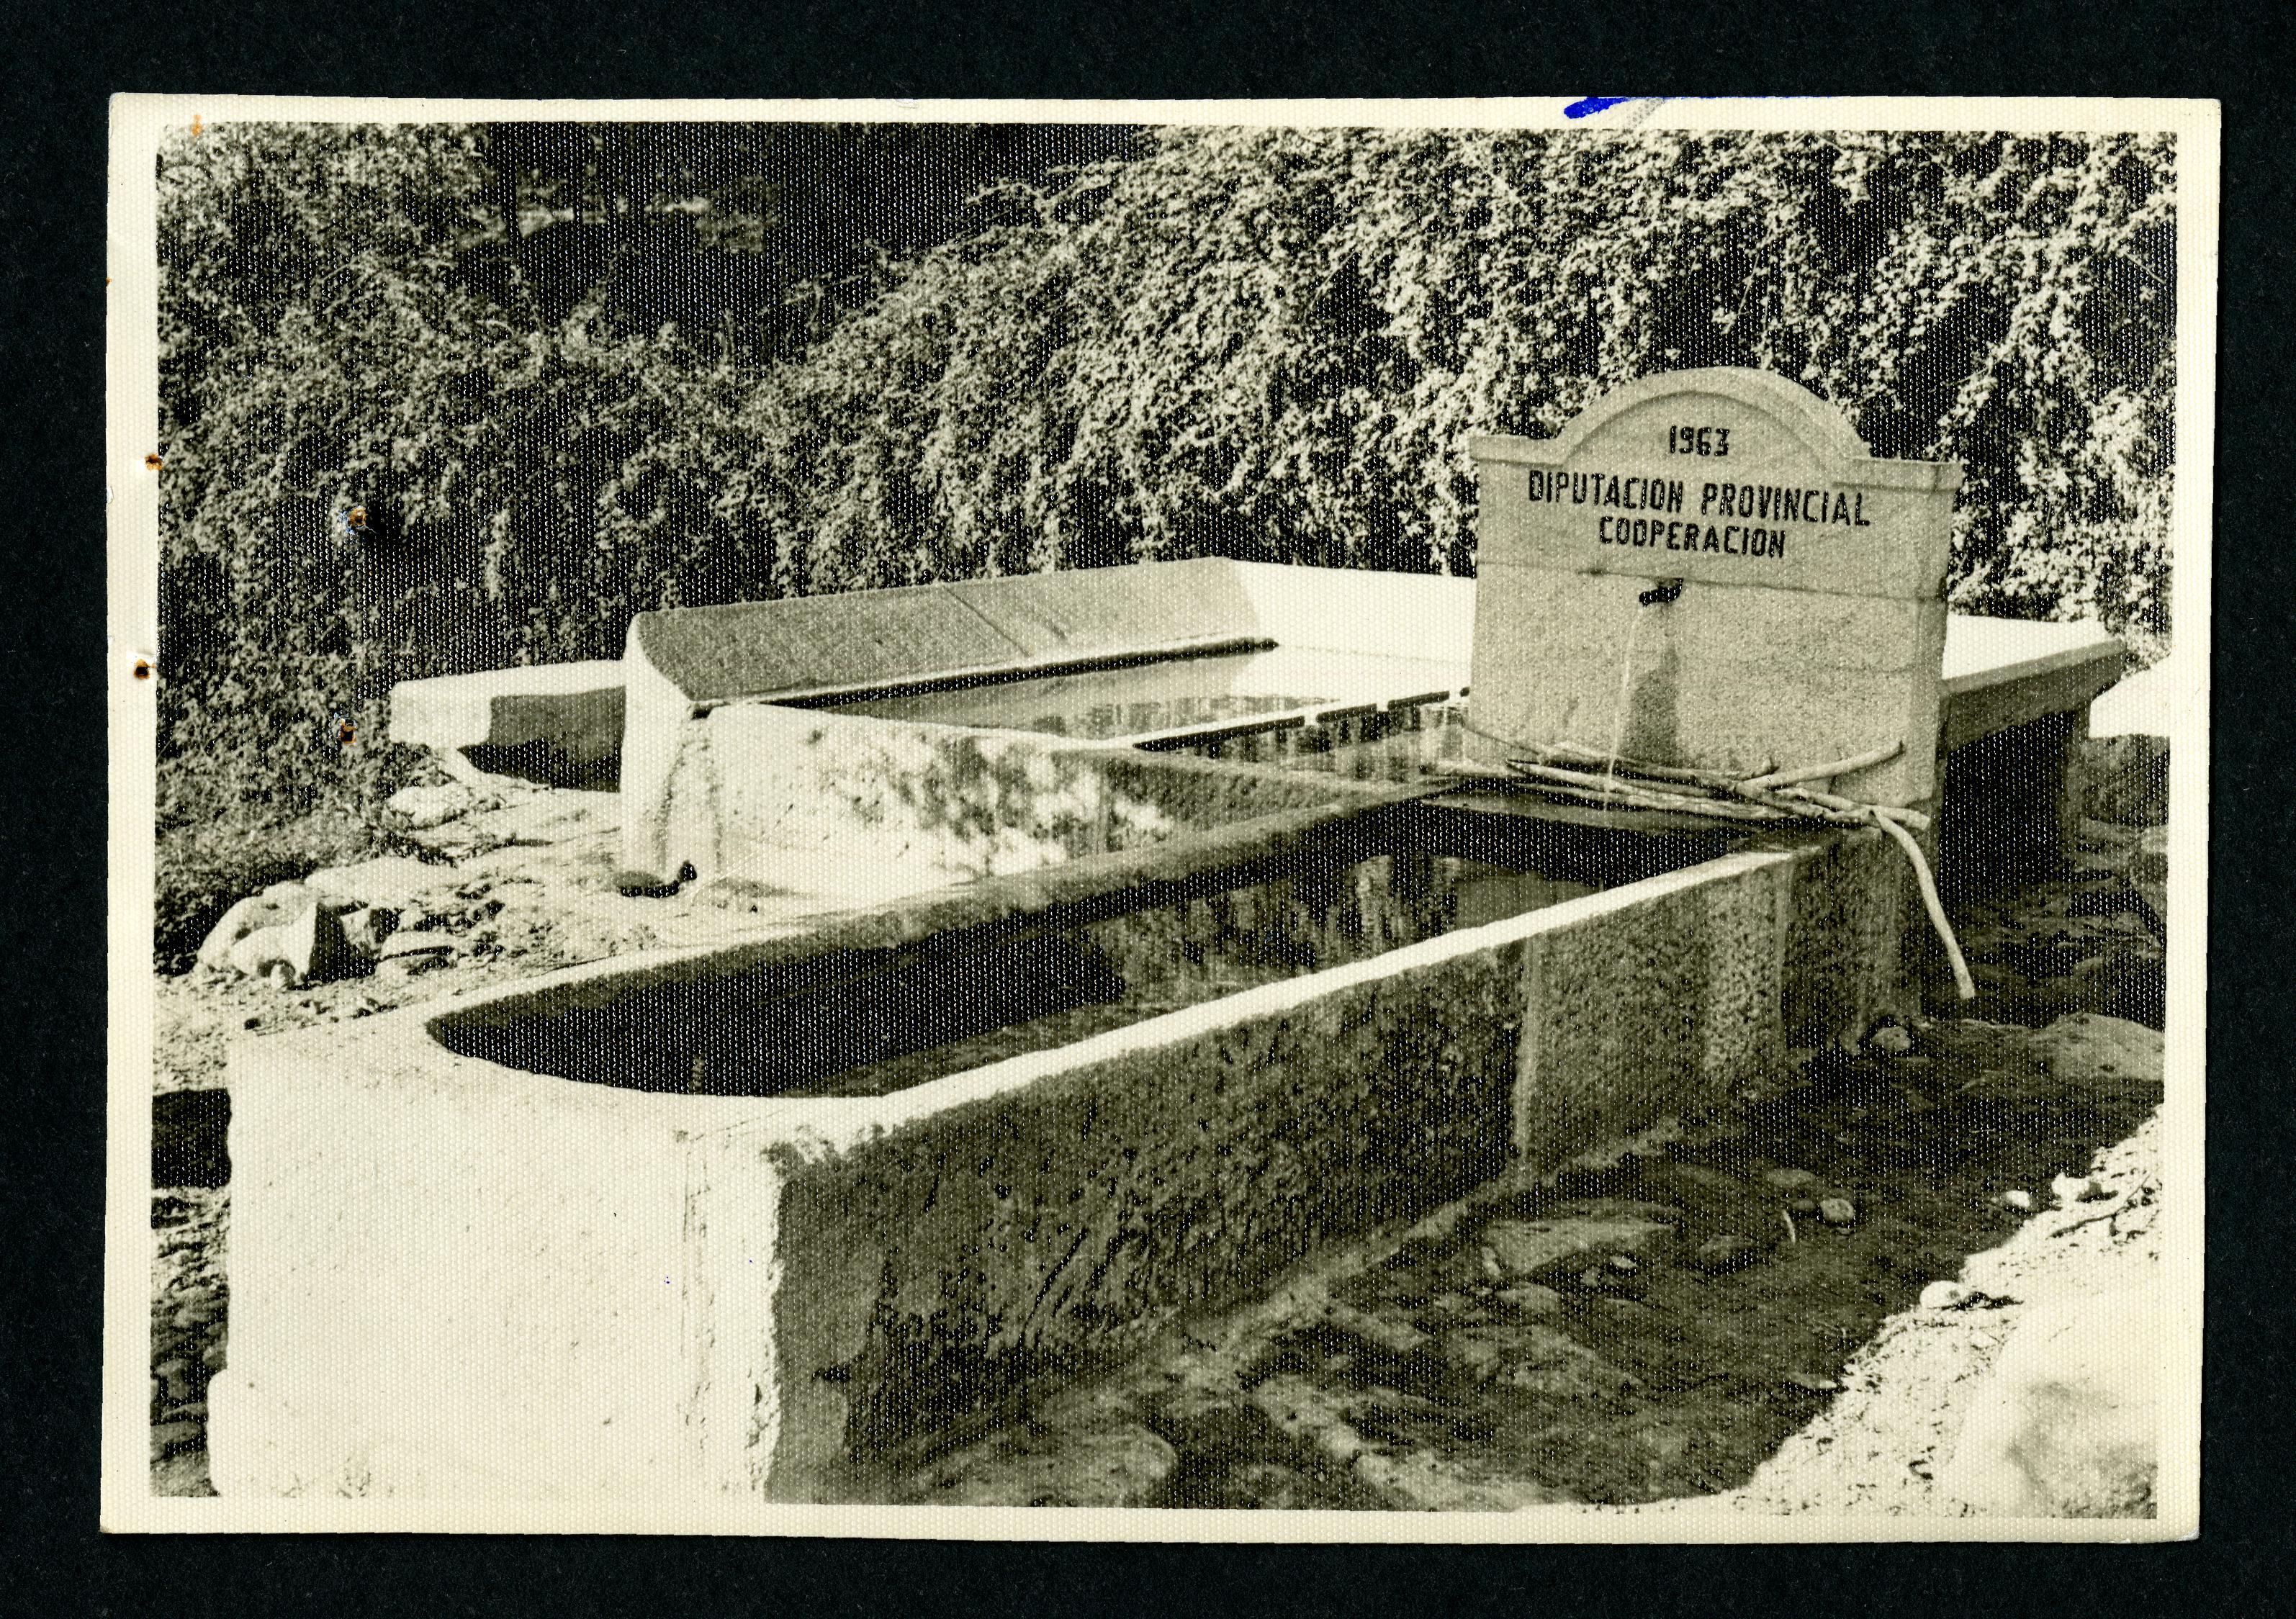 Traida de augas na Igrexa, Carballedo, Cotobade, 1962-63